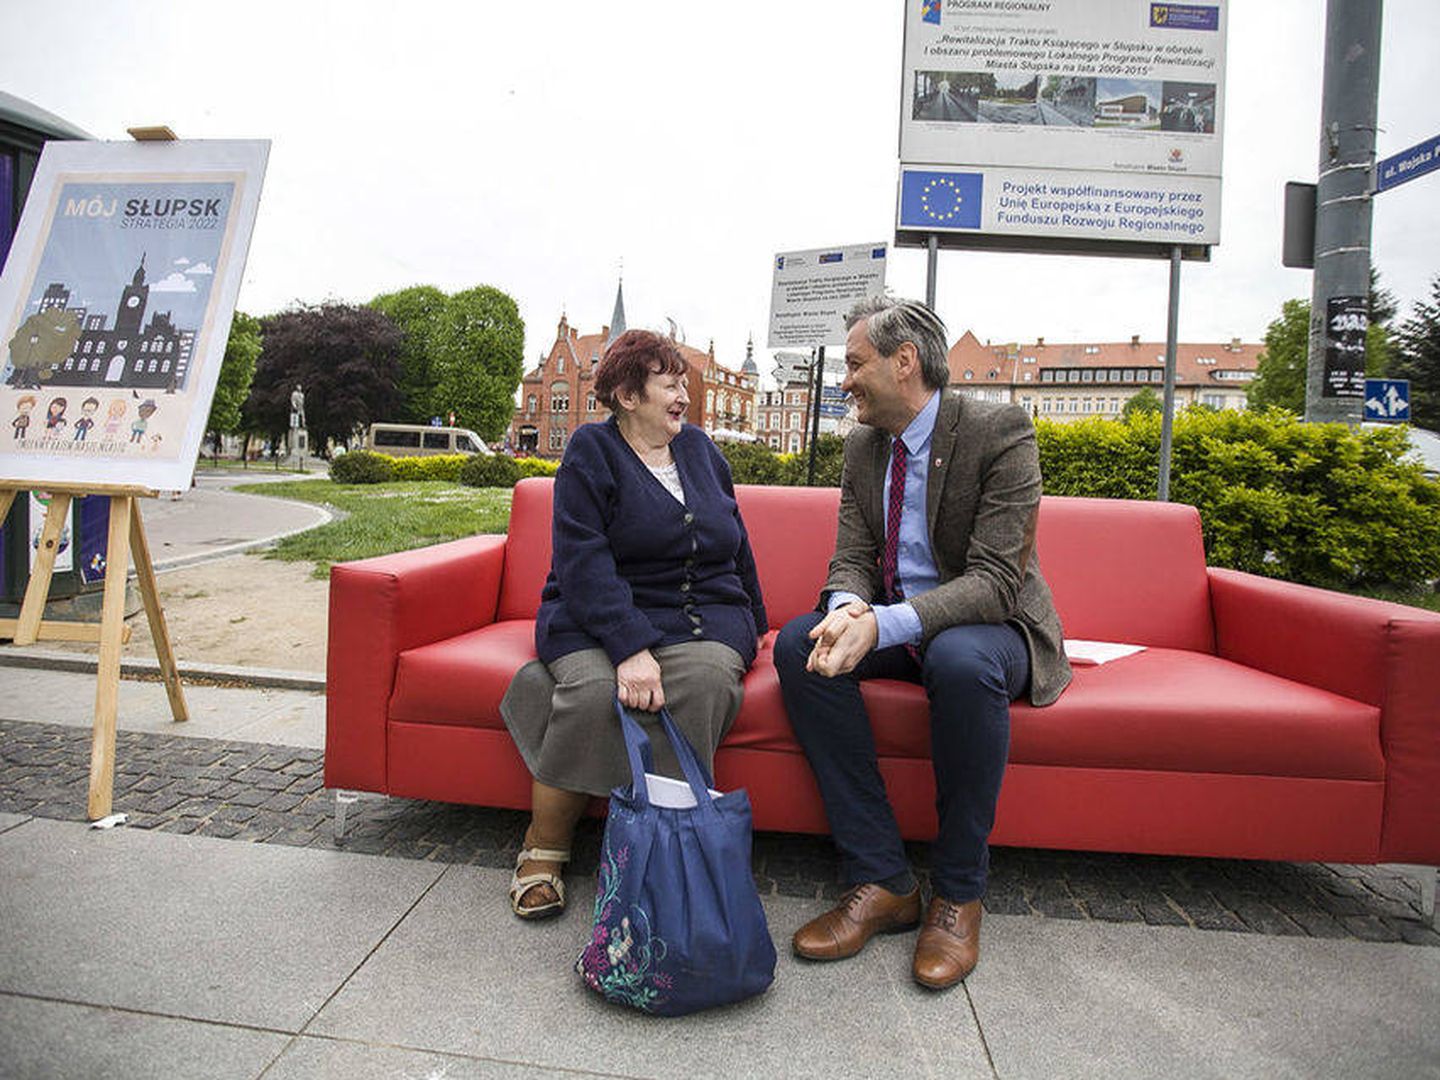 Biedron conversa con sus vecinos en un sofá rojo (Foto del Ayuntamiento de Slupsk)